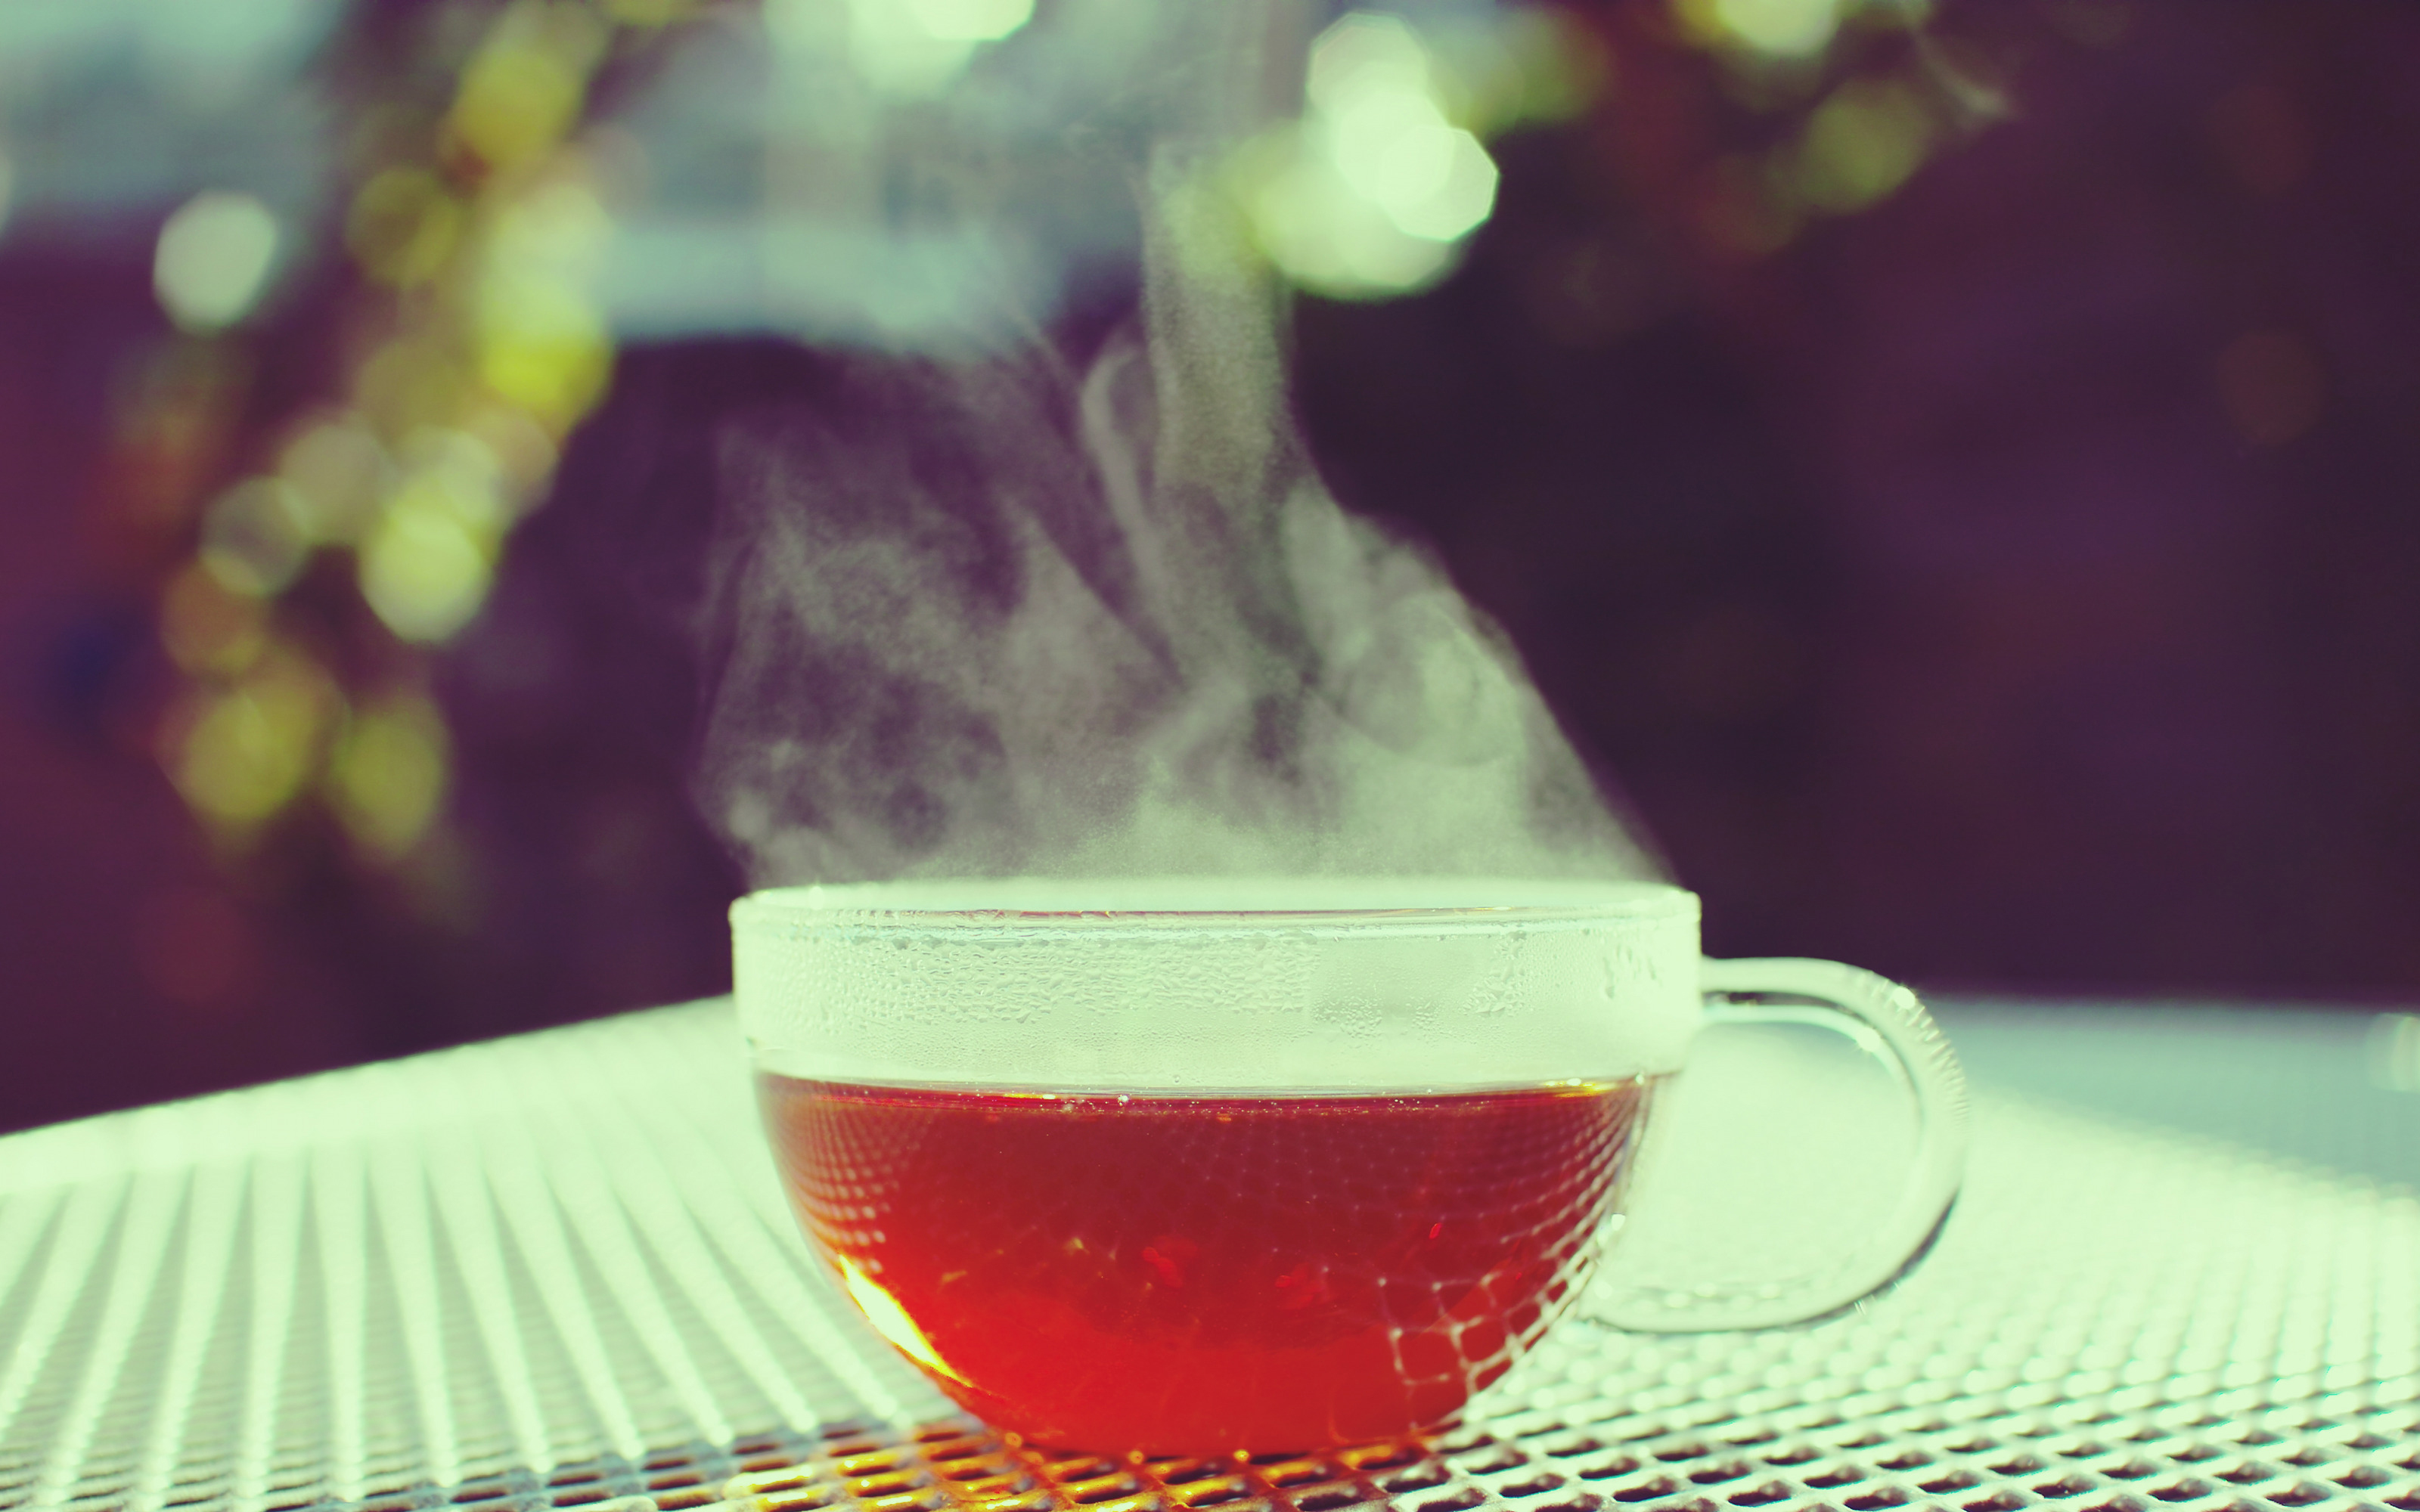 steam, red, tea, glass, drinks - desktop wallpaper